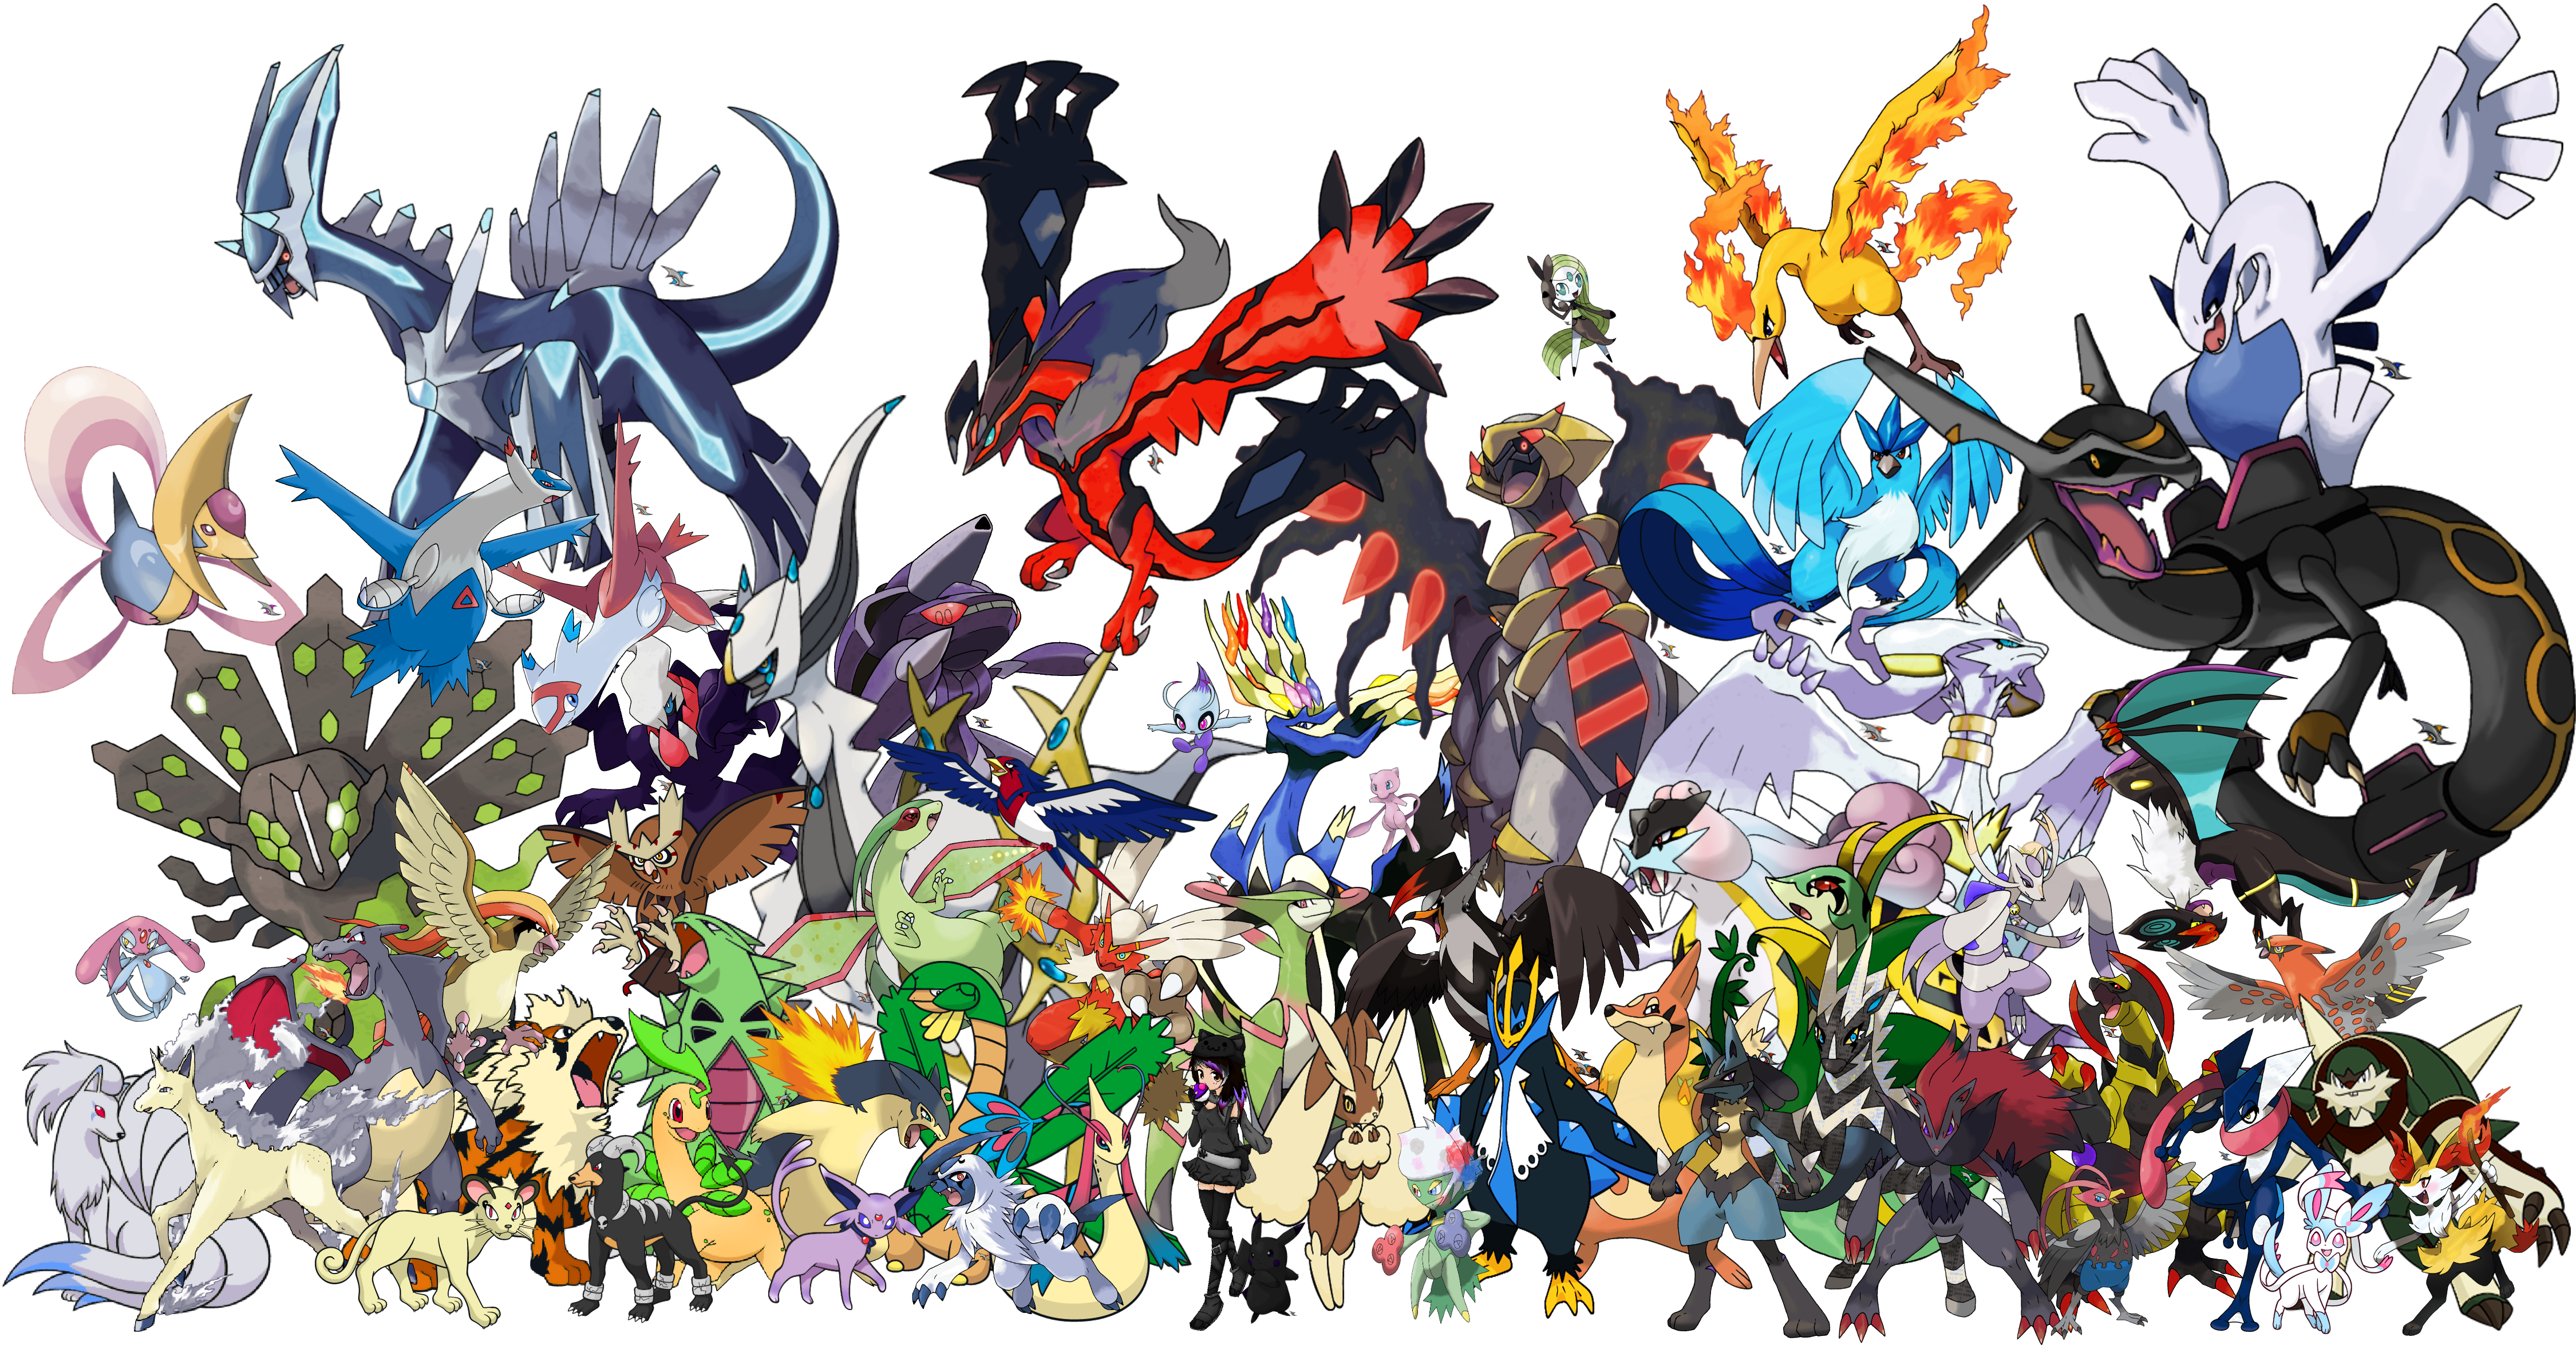 All Shiny Legendary Pokemon Wallpaper. Halo Legendary Wallpaper, Legendary Wallpaper and Legendary Pokemon Wallpaper